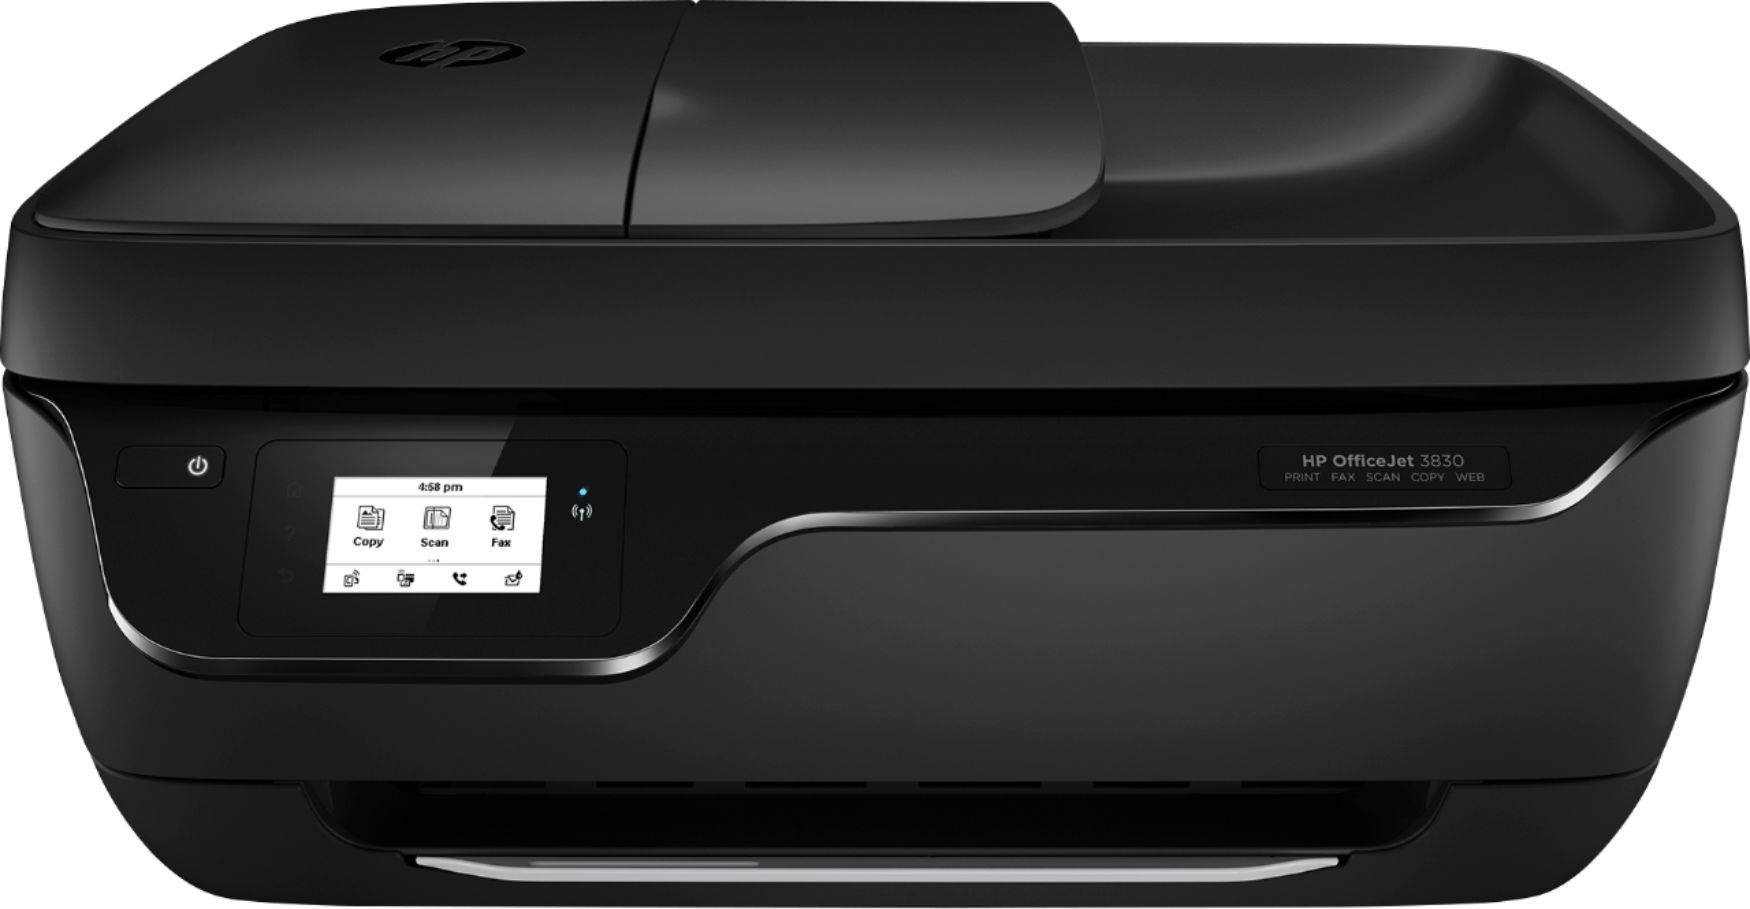 HP OfficeJet 3830 Wireless AllInOne Instant Ink Ready Printer Black